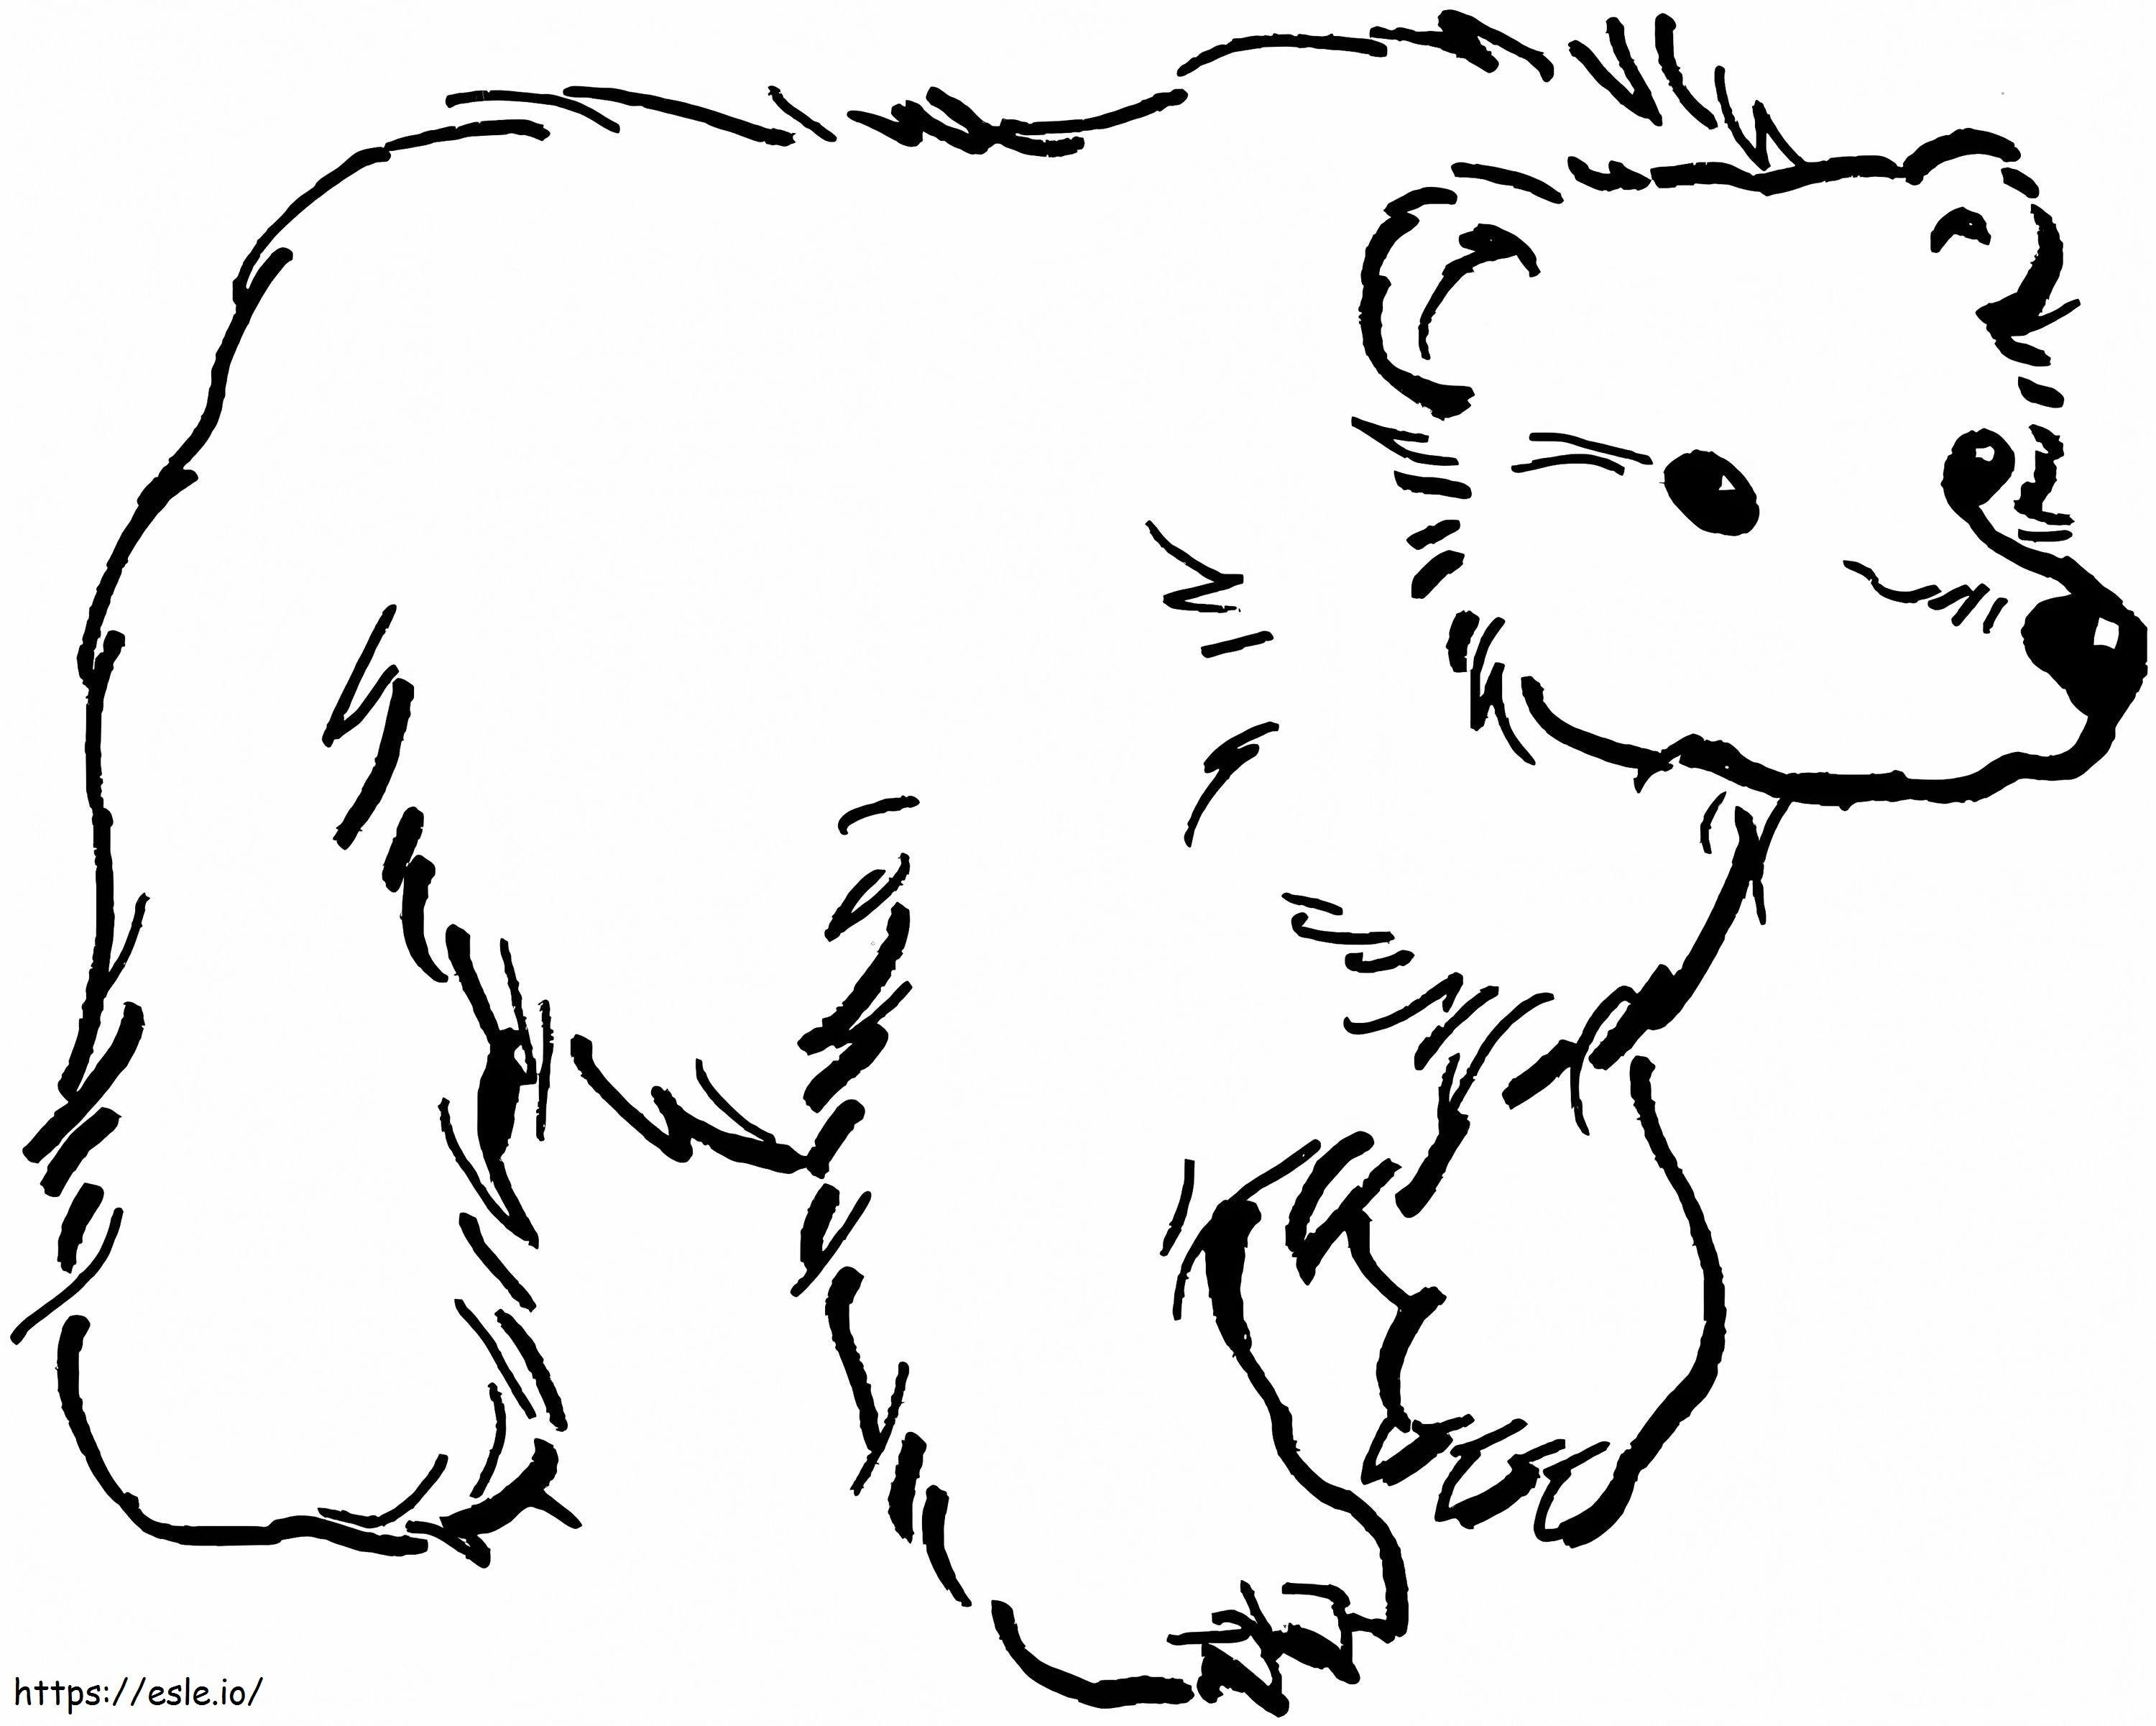 Niedźwiedź brunatny do wydrukowania kolorowanka